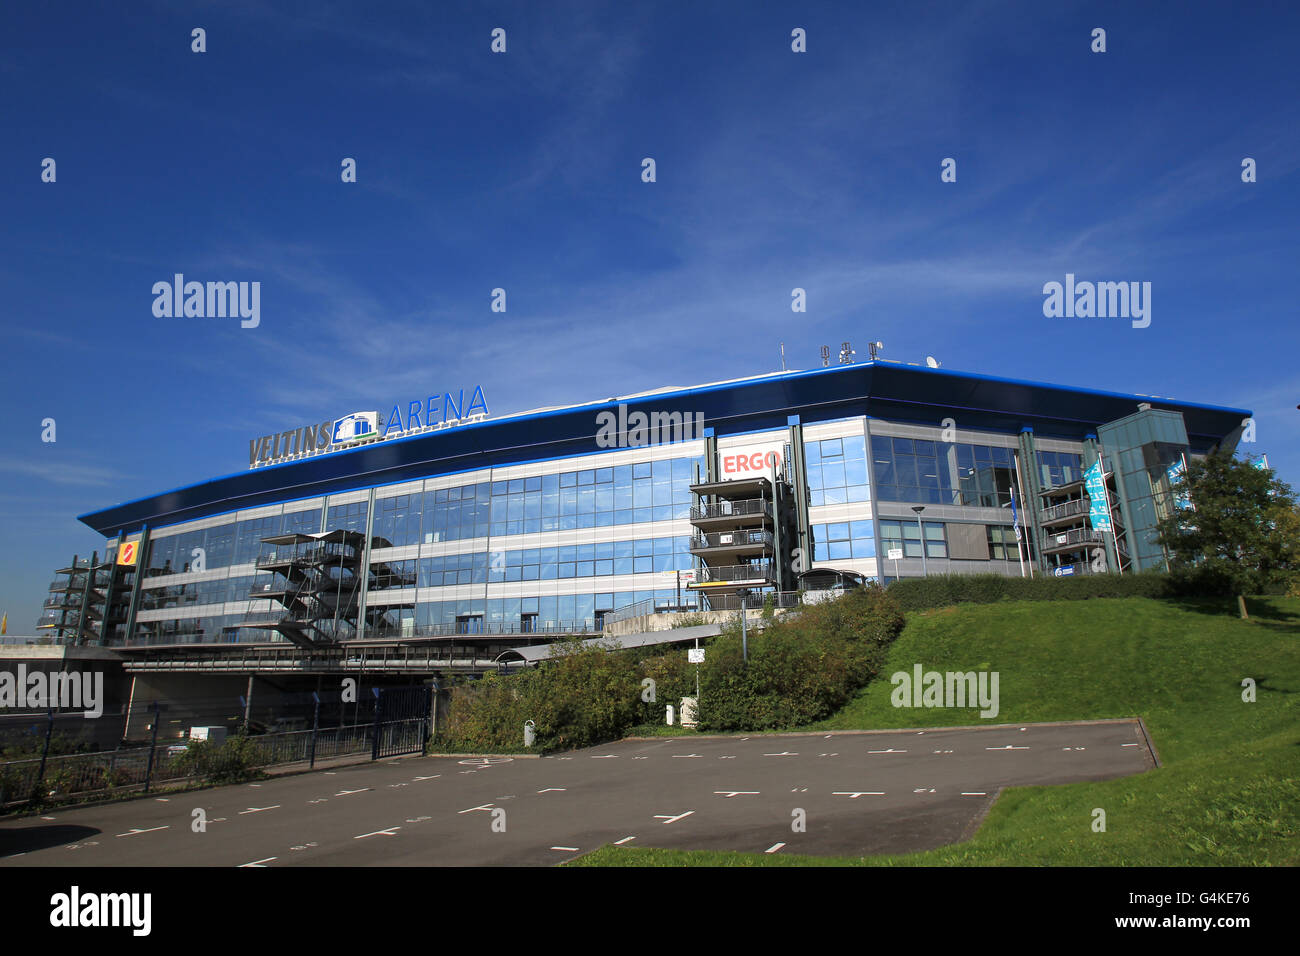 Vue générale de l'extérieur de la Veltins Arena, stade de Schalke 04 Banque D'Images